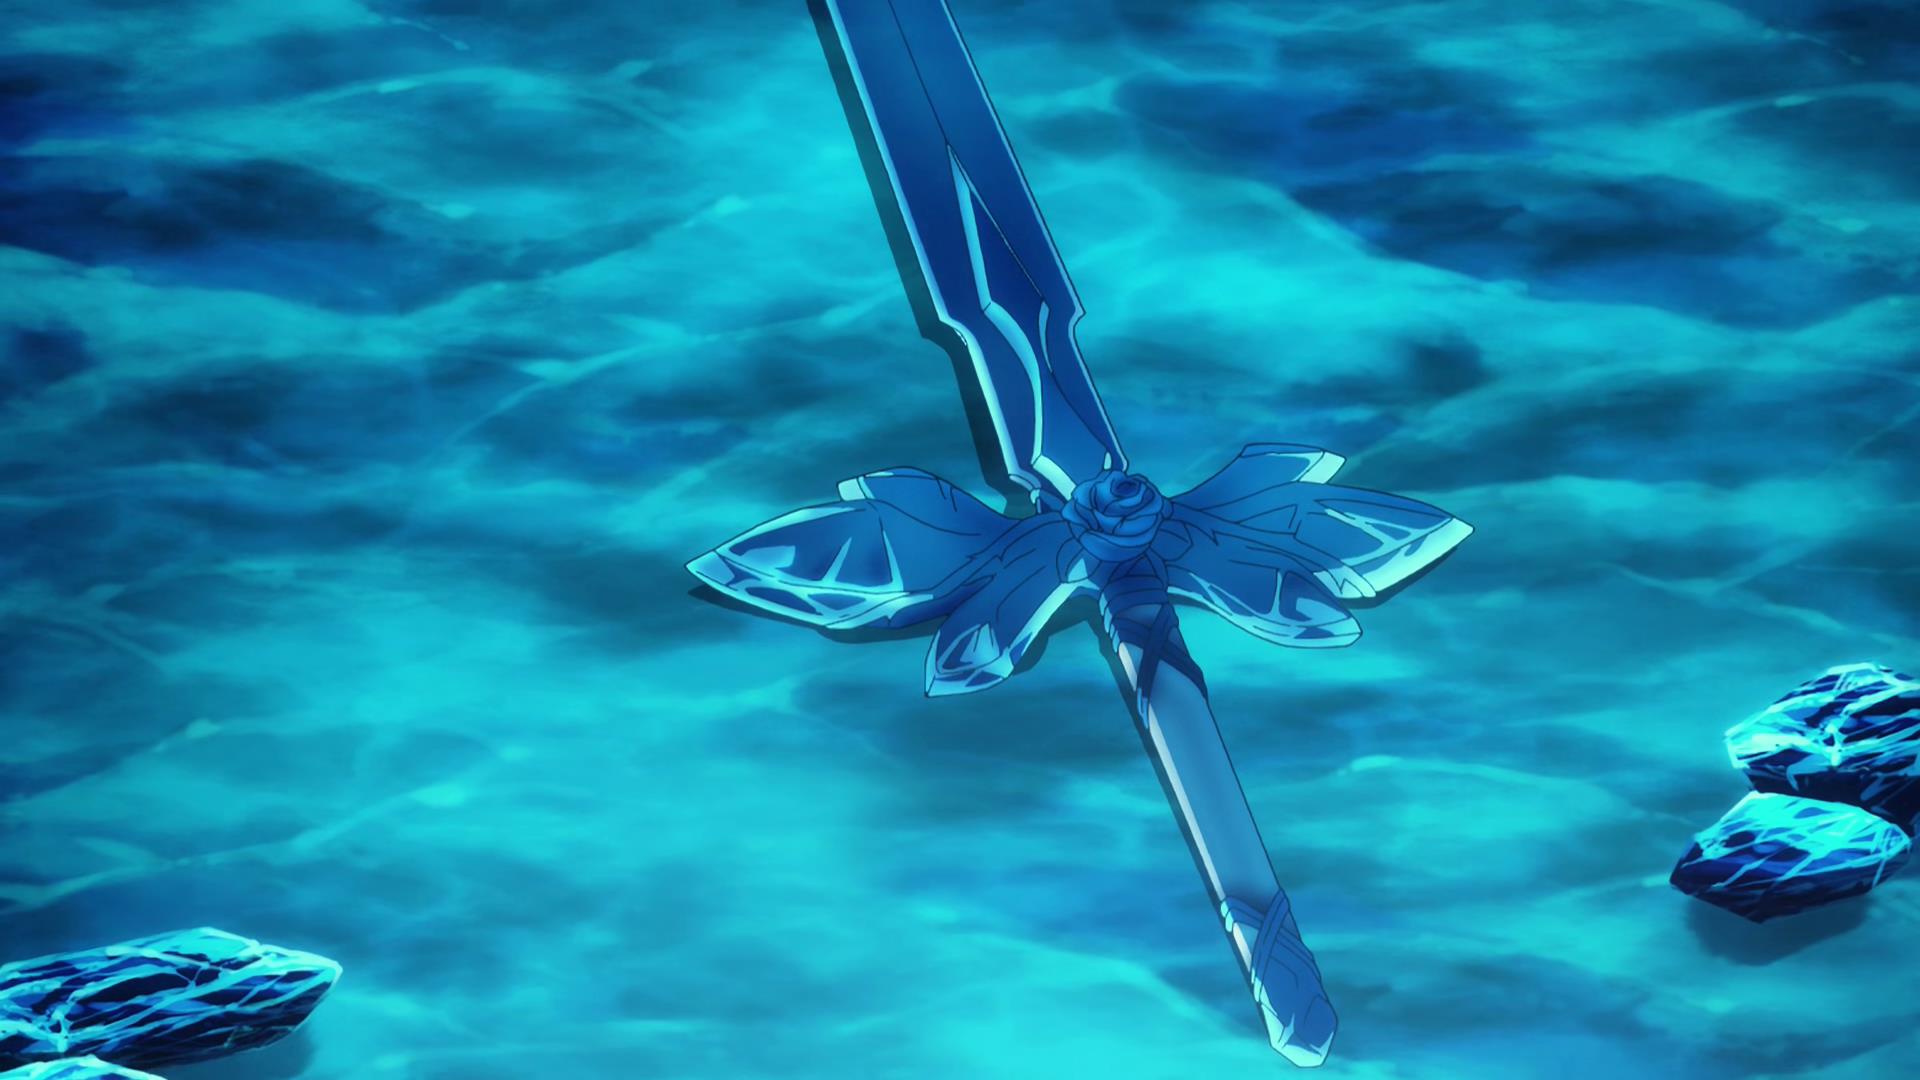 蓝蔷薇之剑壁纸图片